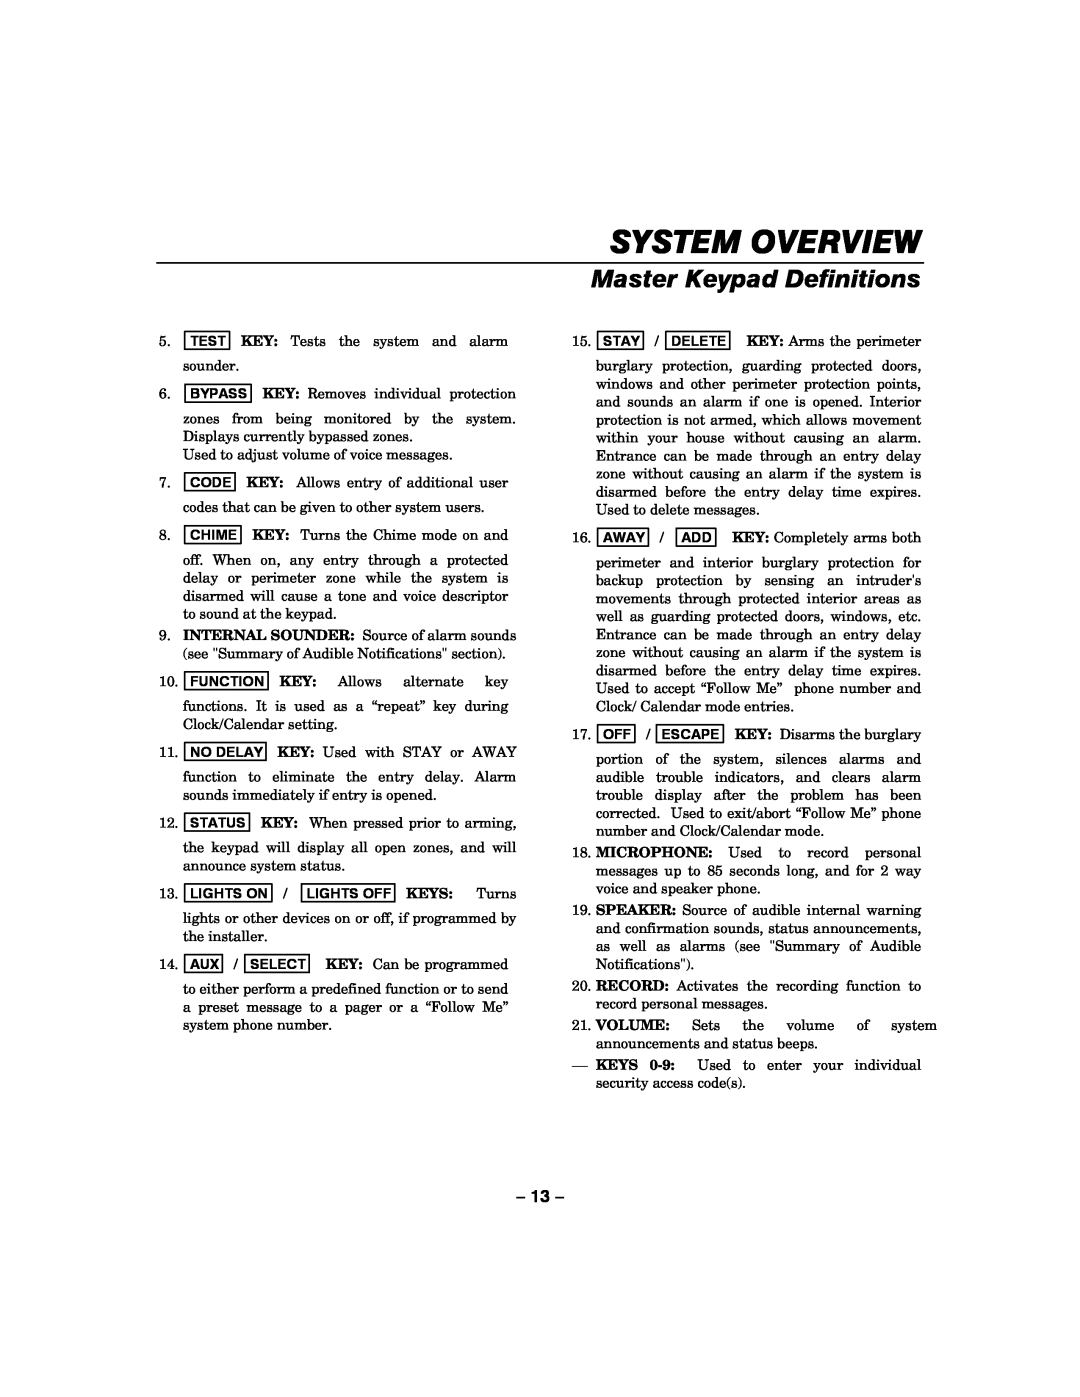 Honeywell LYNXR-2 manual System Overview, Master Keypad Definitions, LIGHTS ON / LIGHTS OFF KEYS Turns 